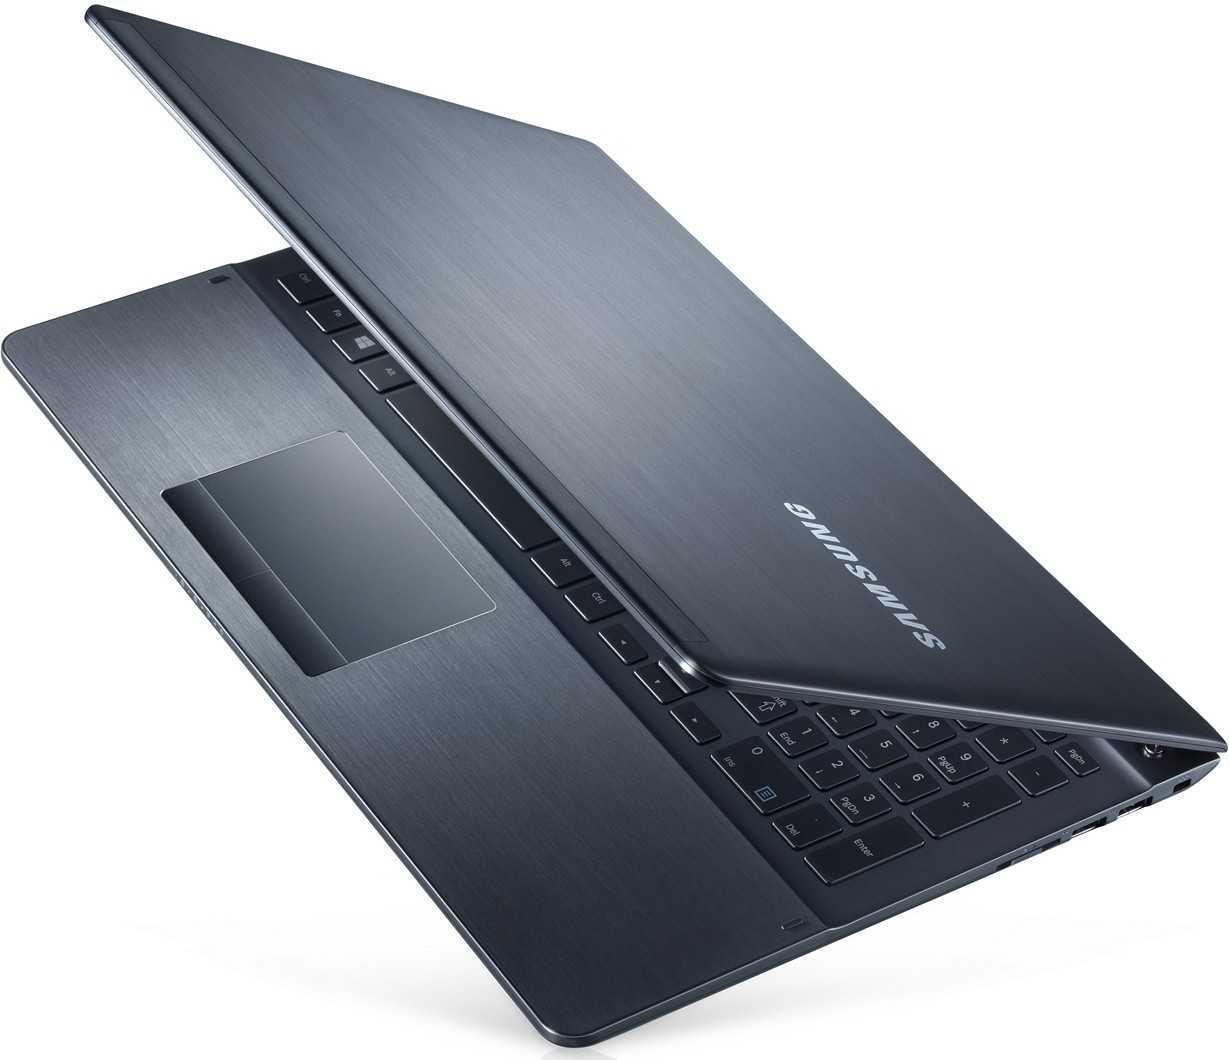 Ноутбук samsung 450r5e-x04 ativ book4 — купить, цена и характеристики, отзывы